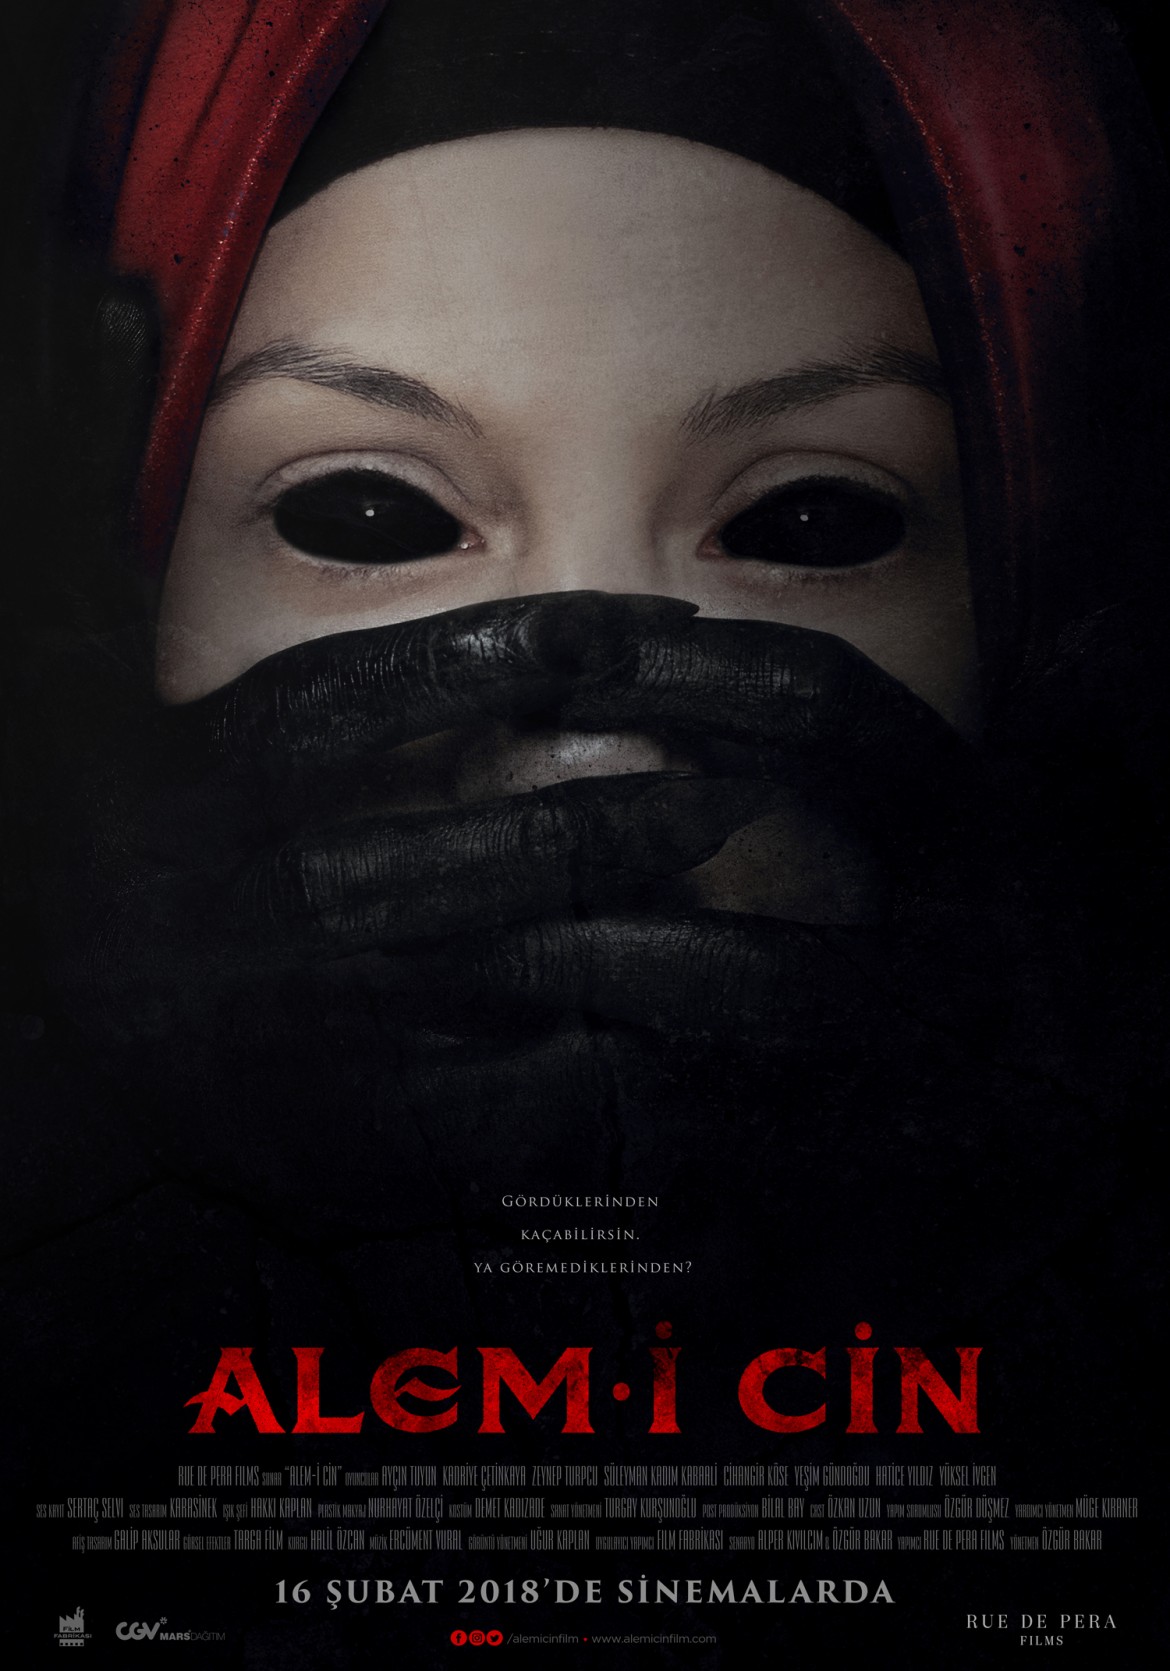 فيلم الرعب التركي عالم الجن Alem I Cin تركيا ادويت